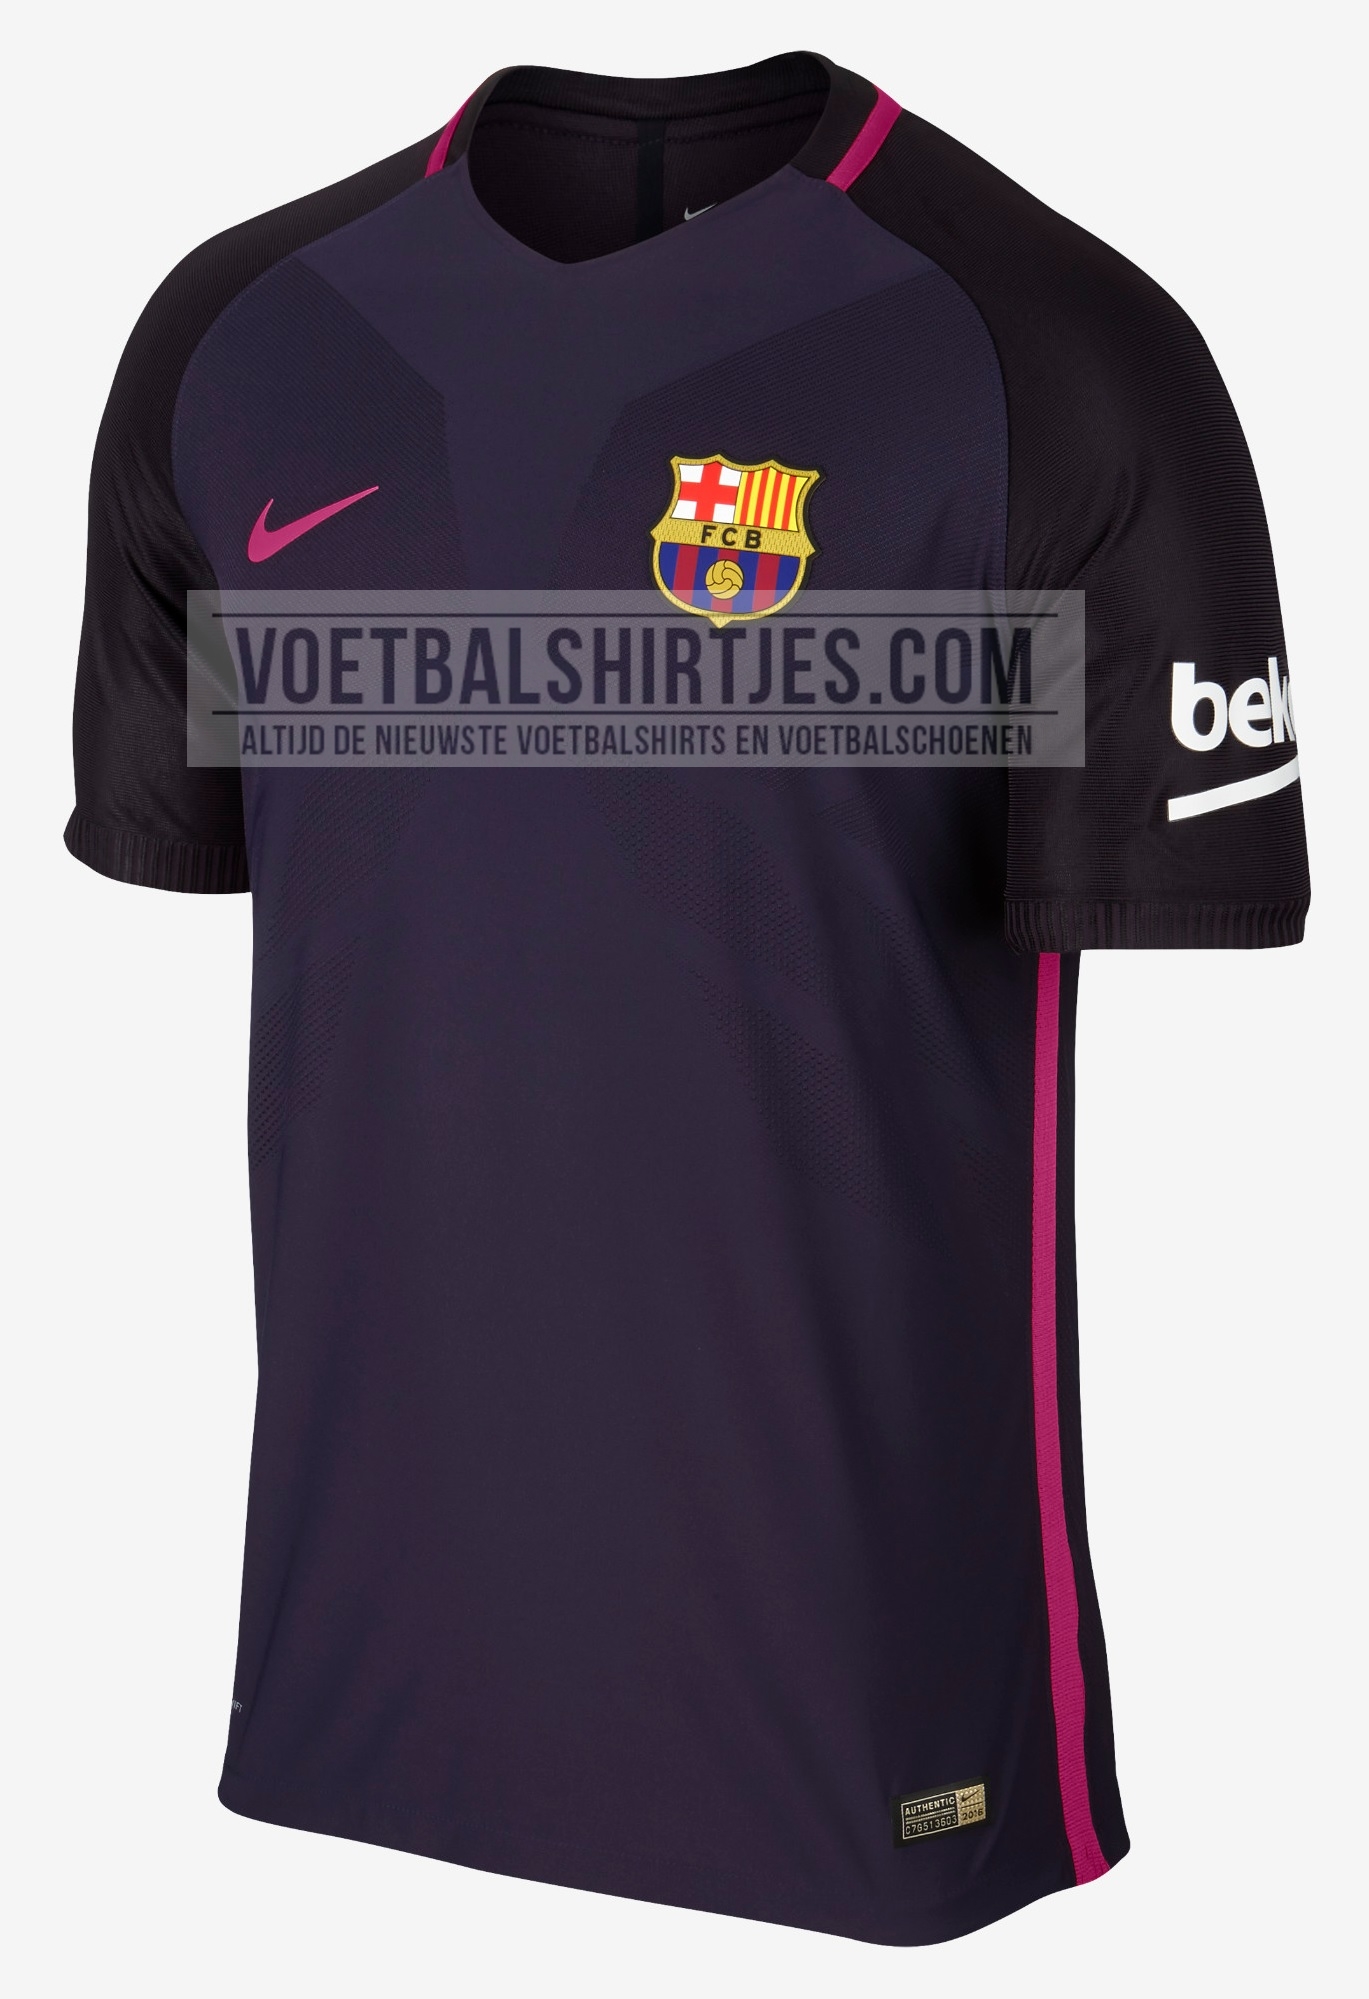 FC uitshirt 2017 - Barcelona away kit